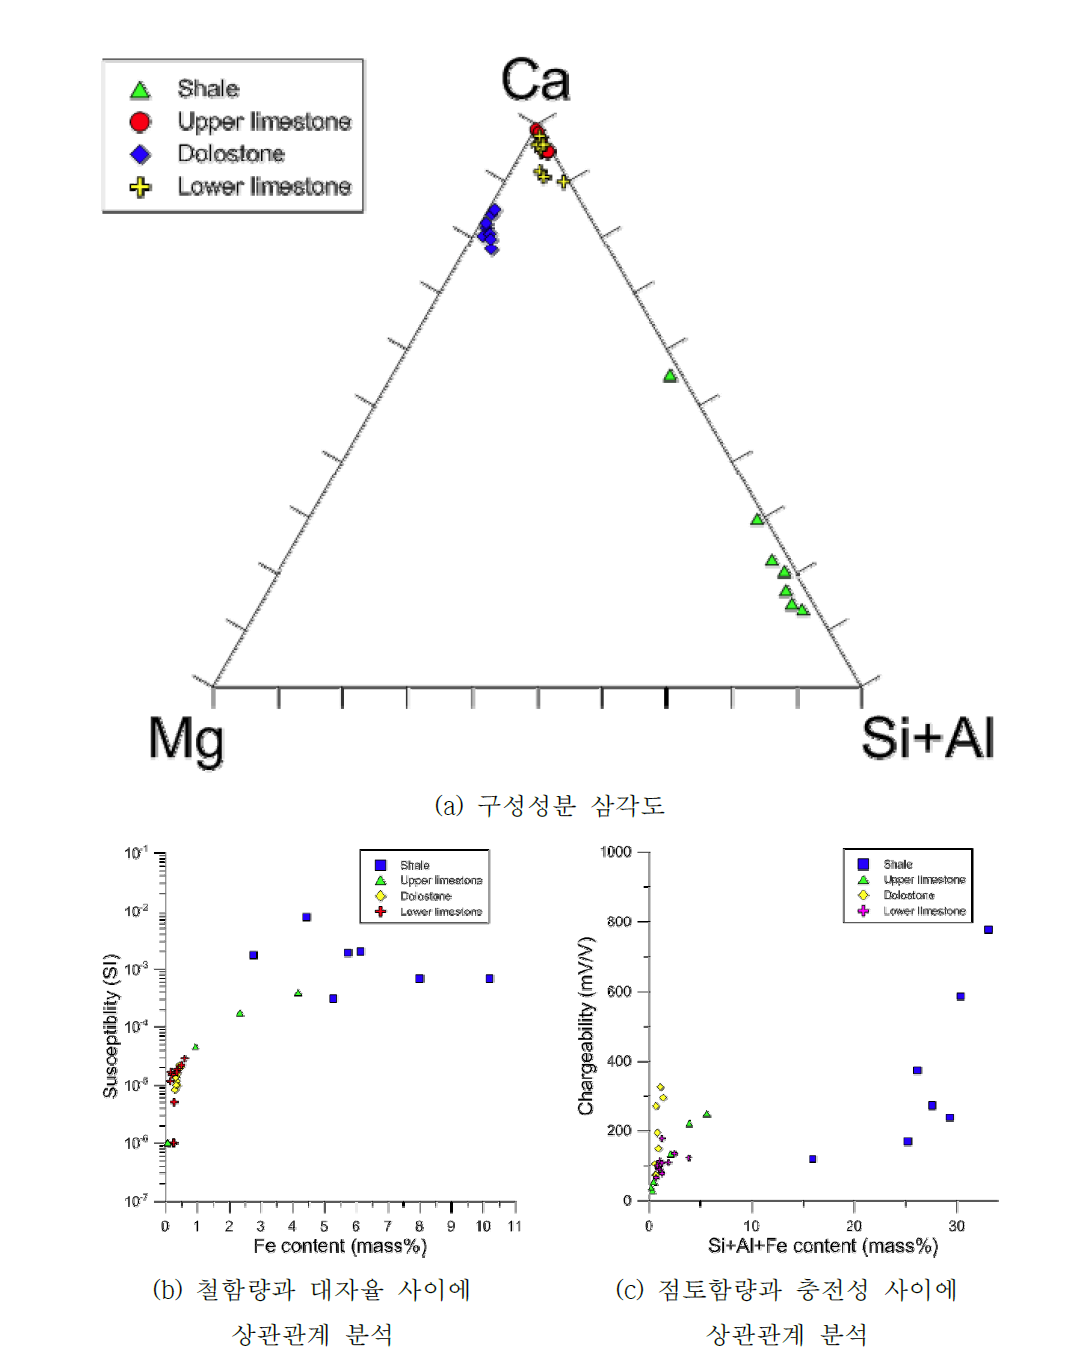 탁상용 XRF를 이용하여 얻은 대조군 암석시료의 구성성분 삼각도와 구성 성분과 대자율 및 충전성 물성 사이에 상관관계 분석